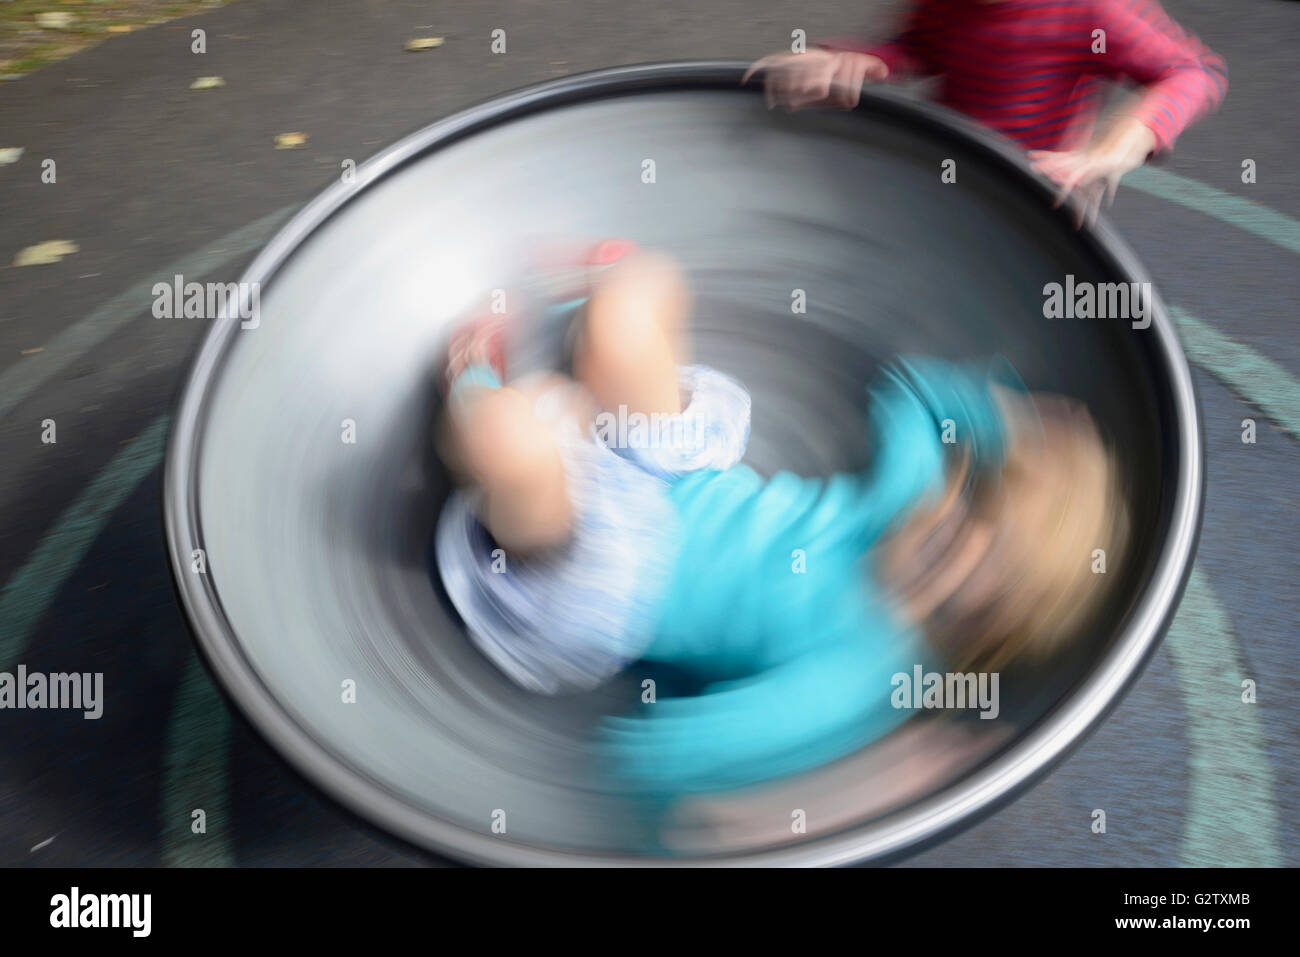 La Scozia, Edimburgo, i giardini di Princes Street e i bambini a giocare a zona, a ovest di Princes Street Gardens. Foto Stock